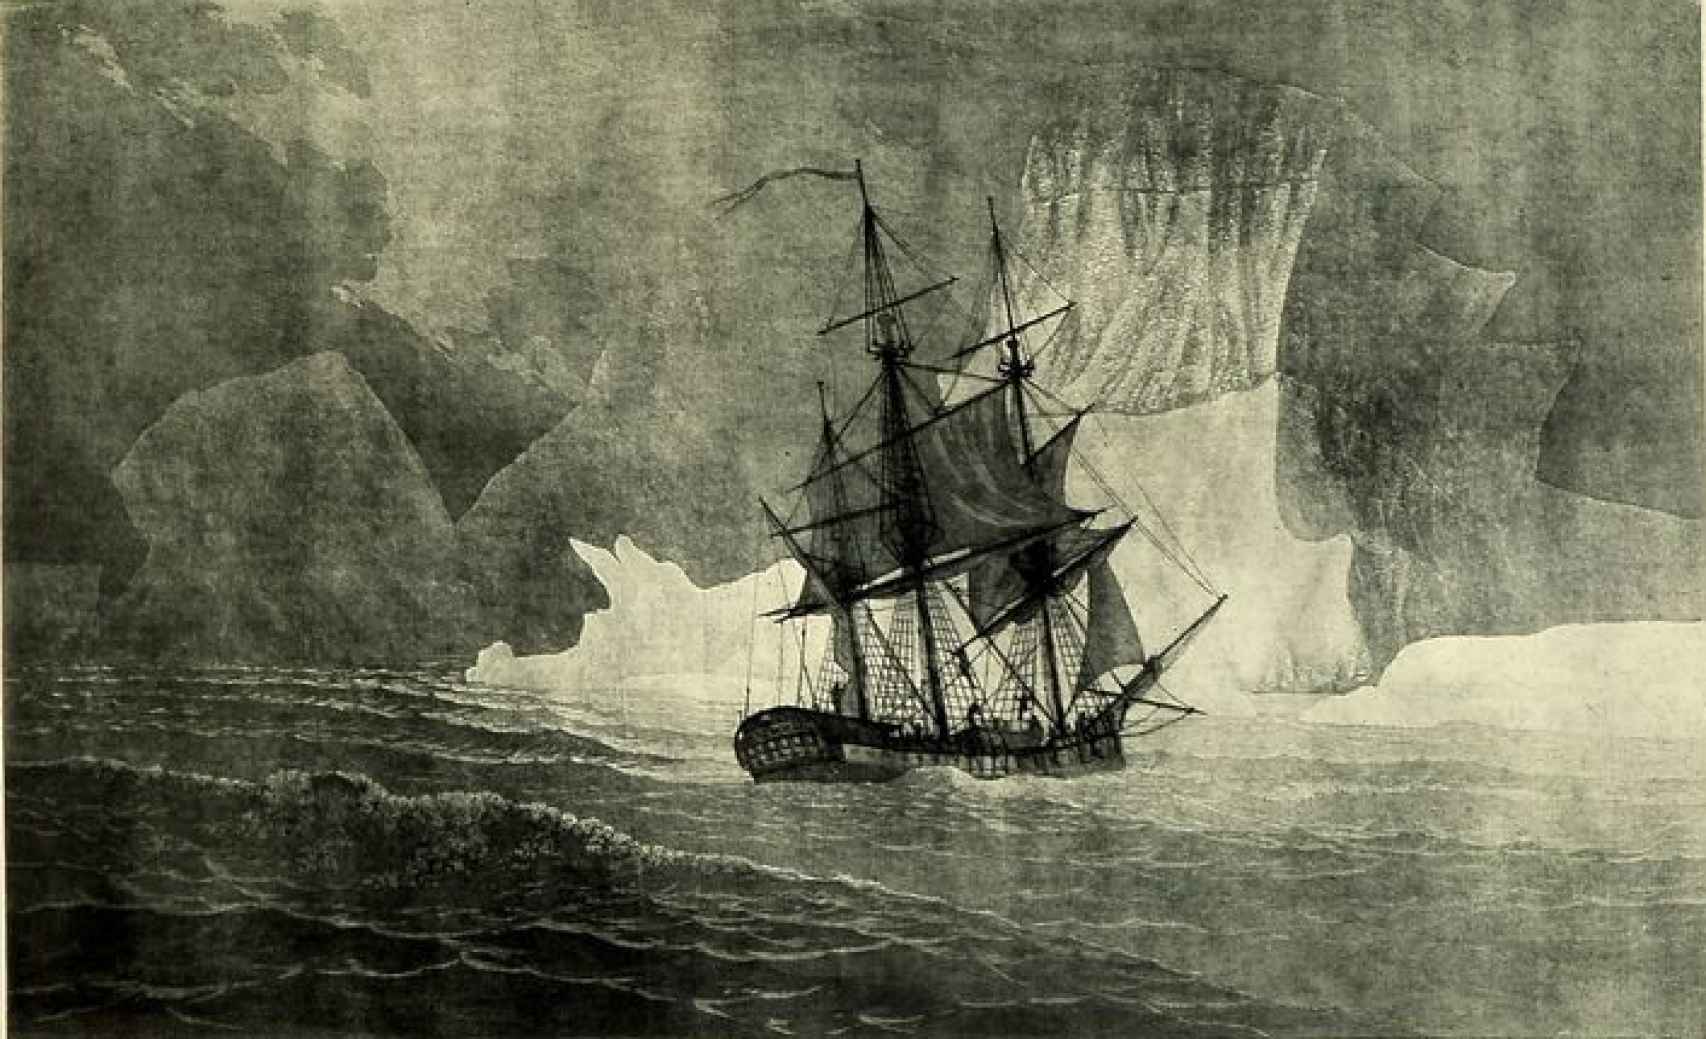 Grabado sobre la expedición de Malaspina de 1789-1794